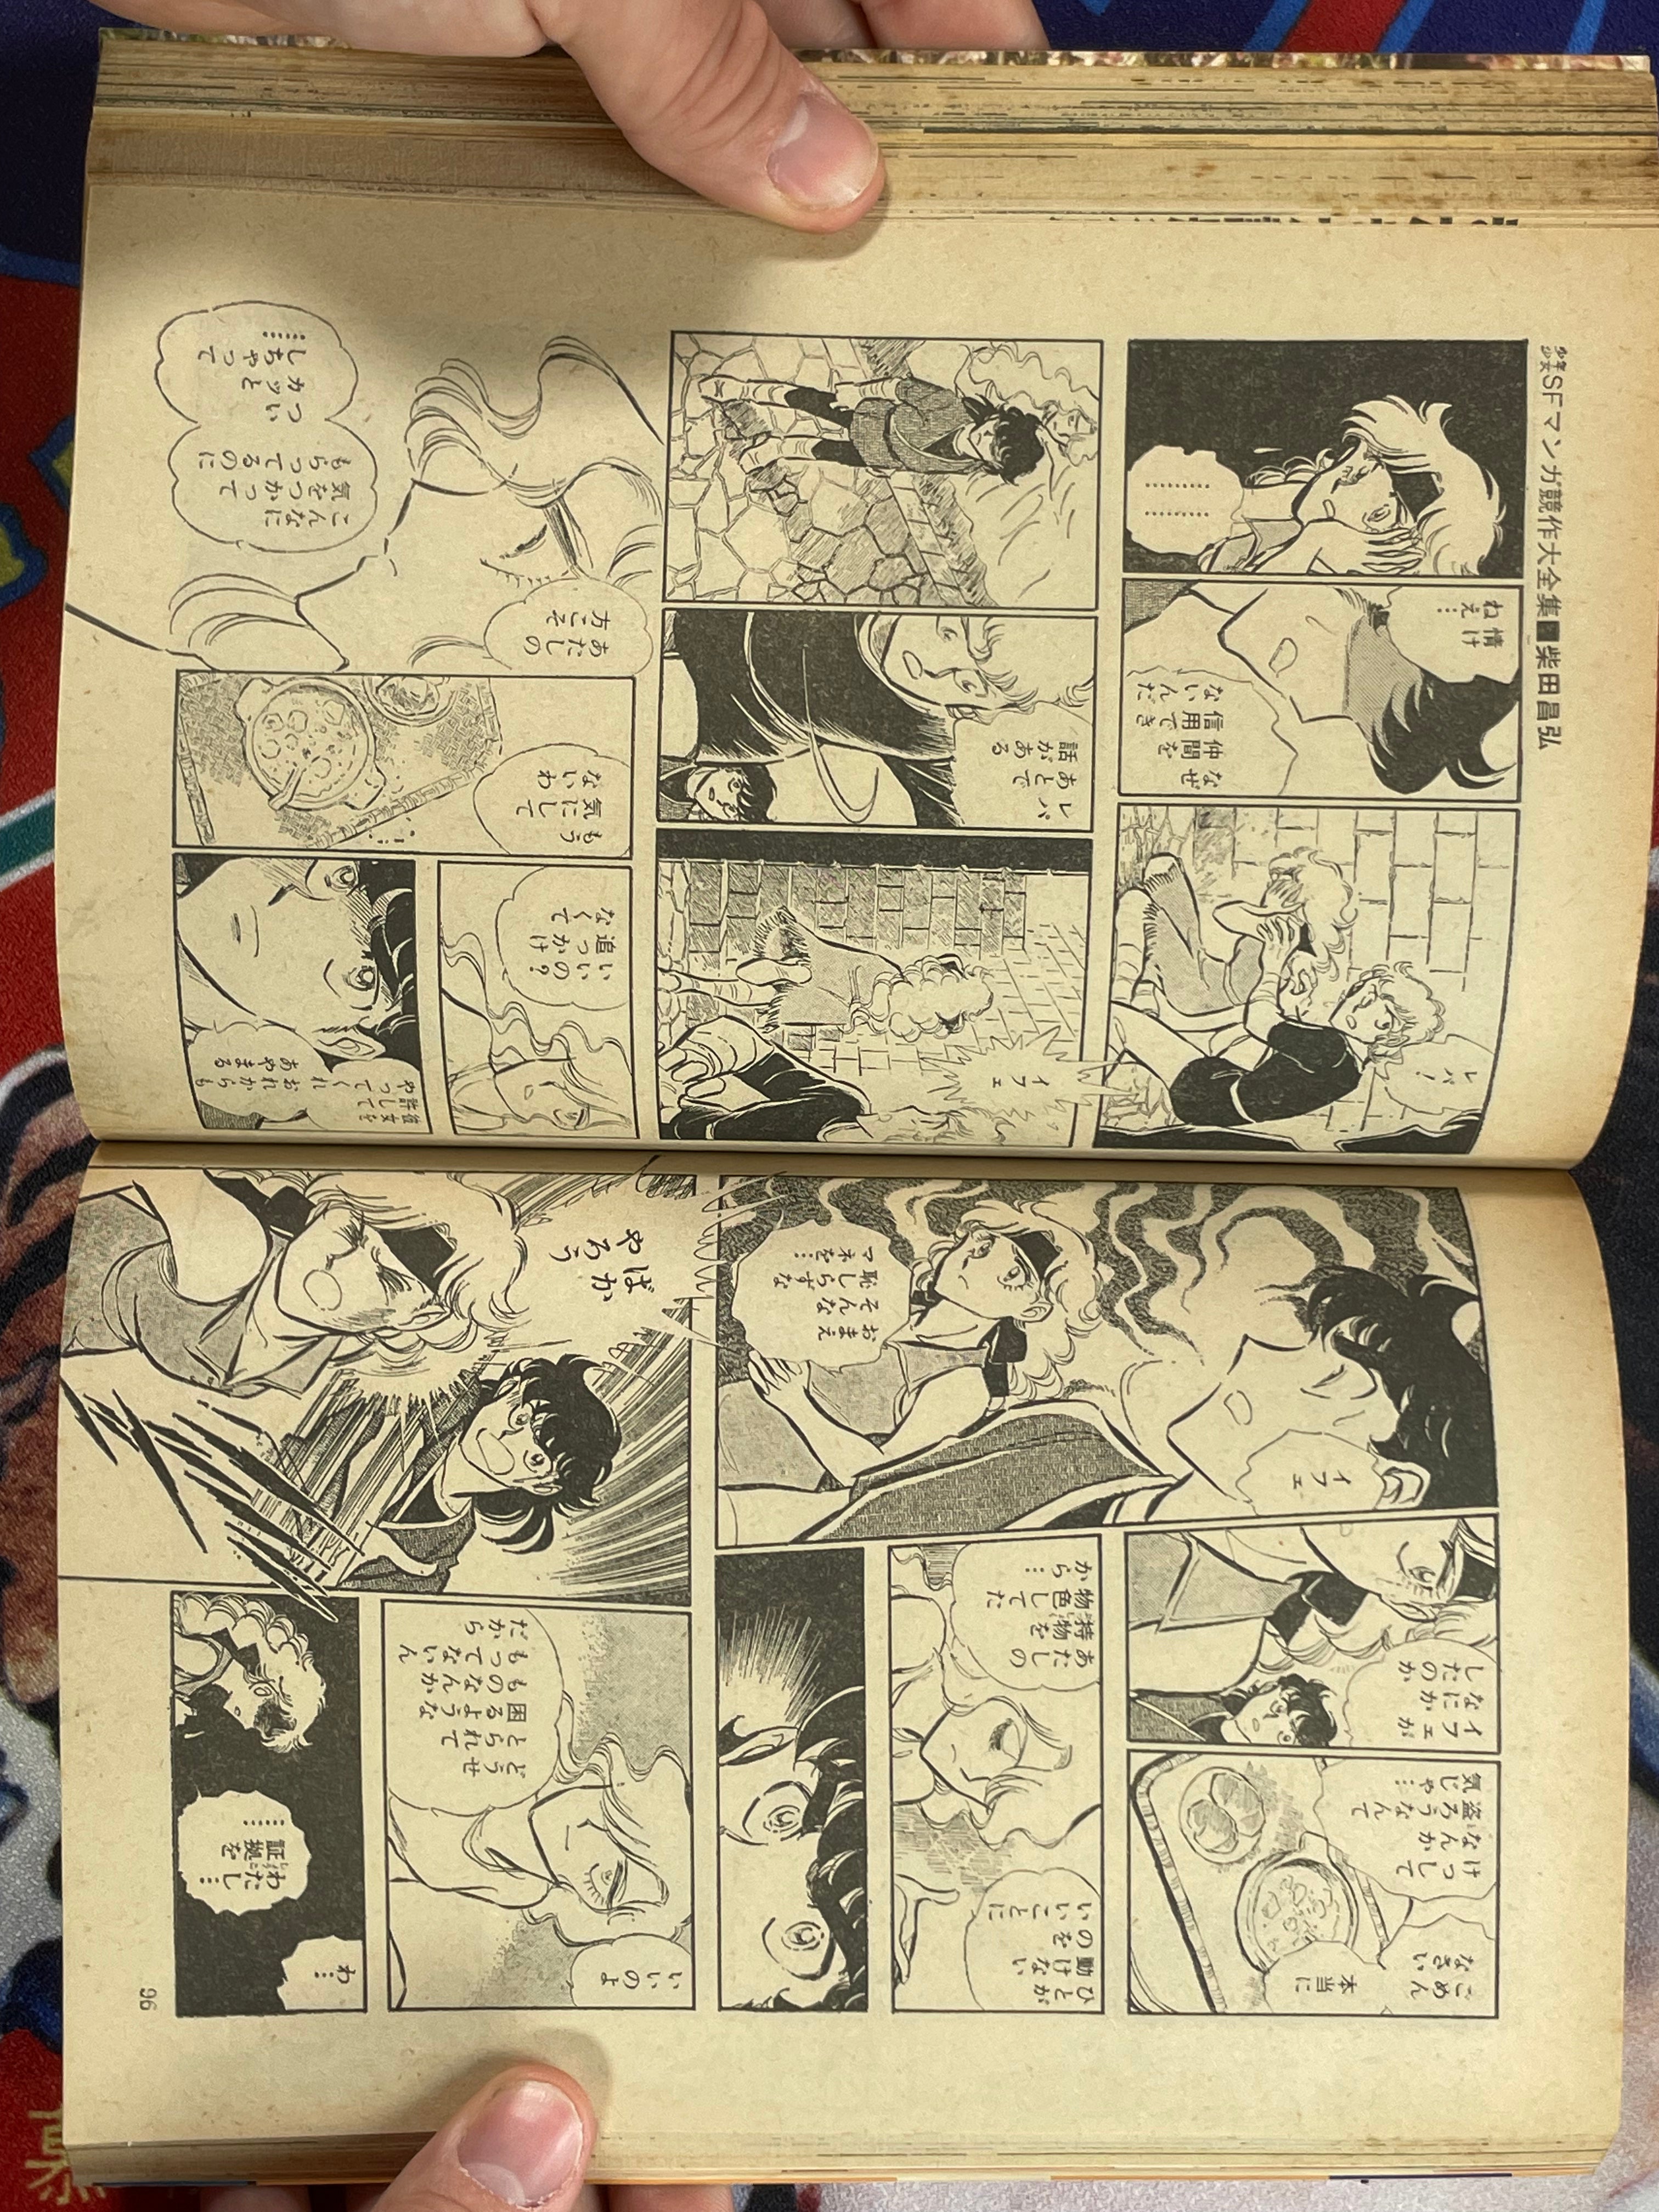 SF Manga Kyosaku Big Collection Magazine Part 14 - 4/1982